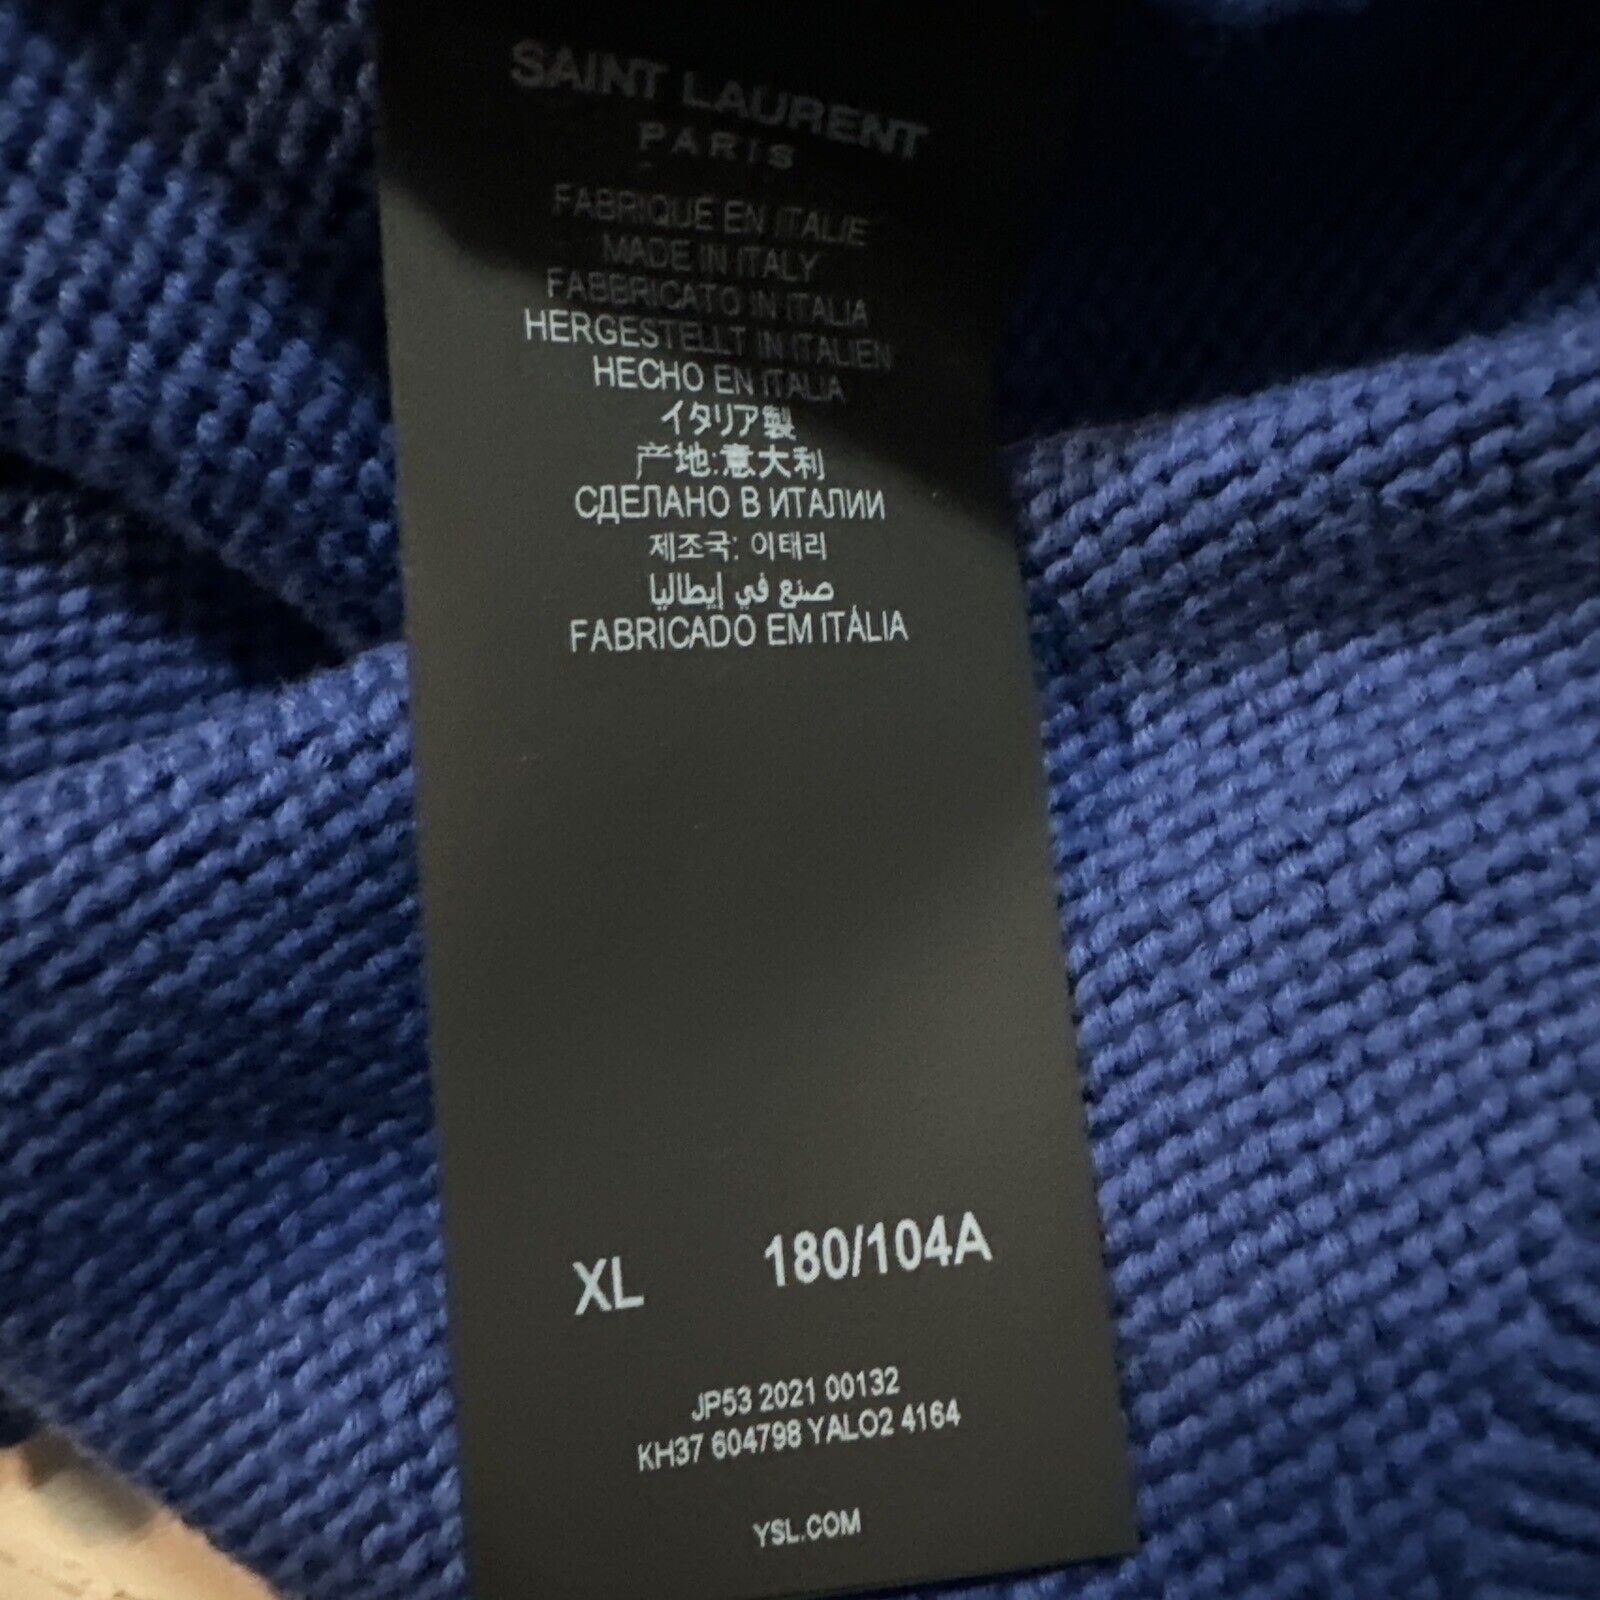 NWT $890 Мужской свитер с круглым вырезом Saint Laurent синий, размер XL, Италия